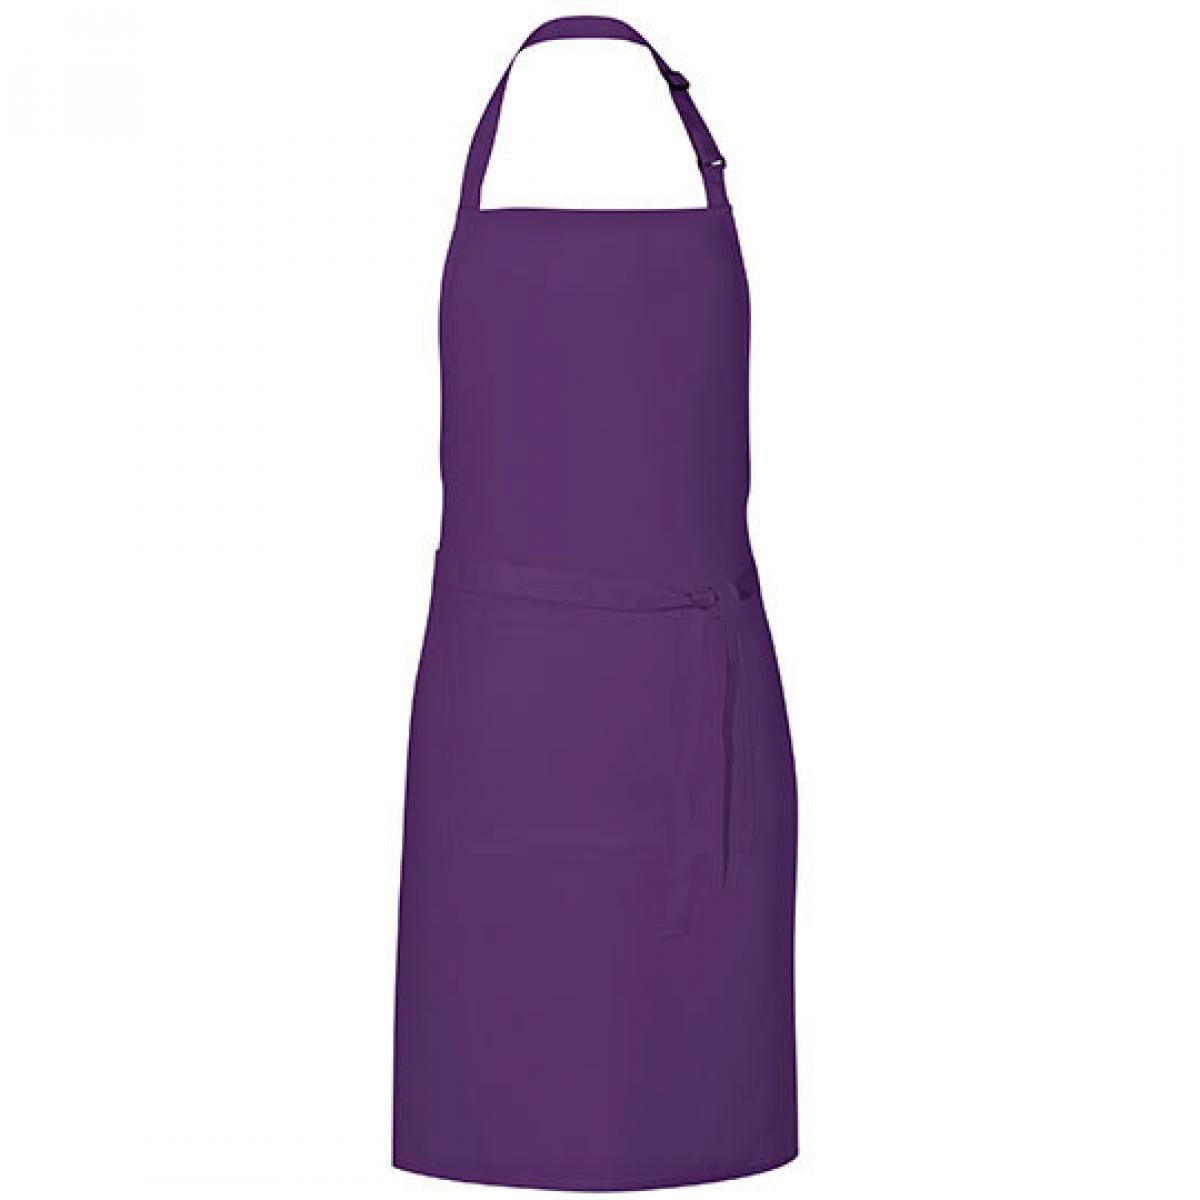 Hersteller: Link Kitchen Wear Herstellernummer: GS8572 Artikelbezeichnung: Grill Apron - 85 x 72 cm - Waschbar bis 60 °C Farbe: Purple (ca. Pantone 269)